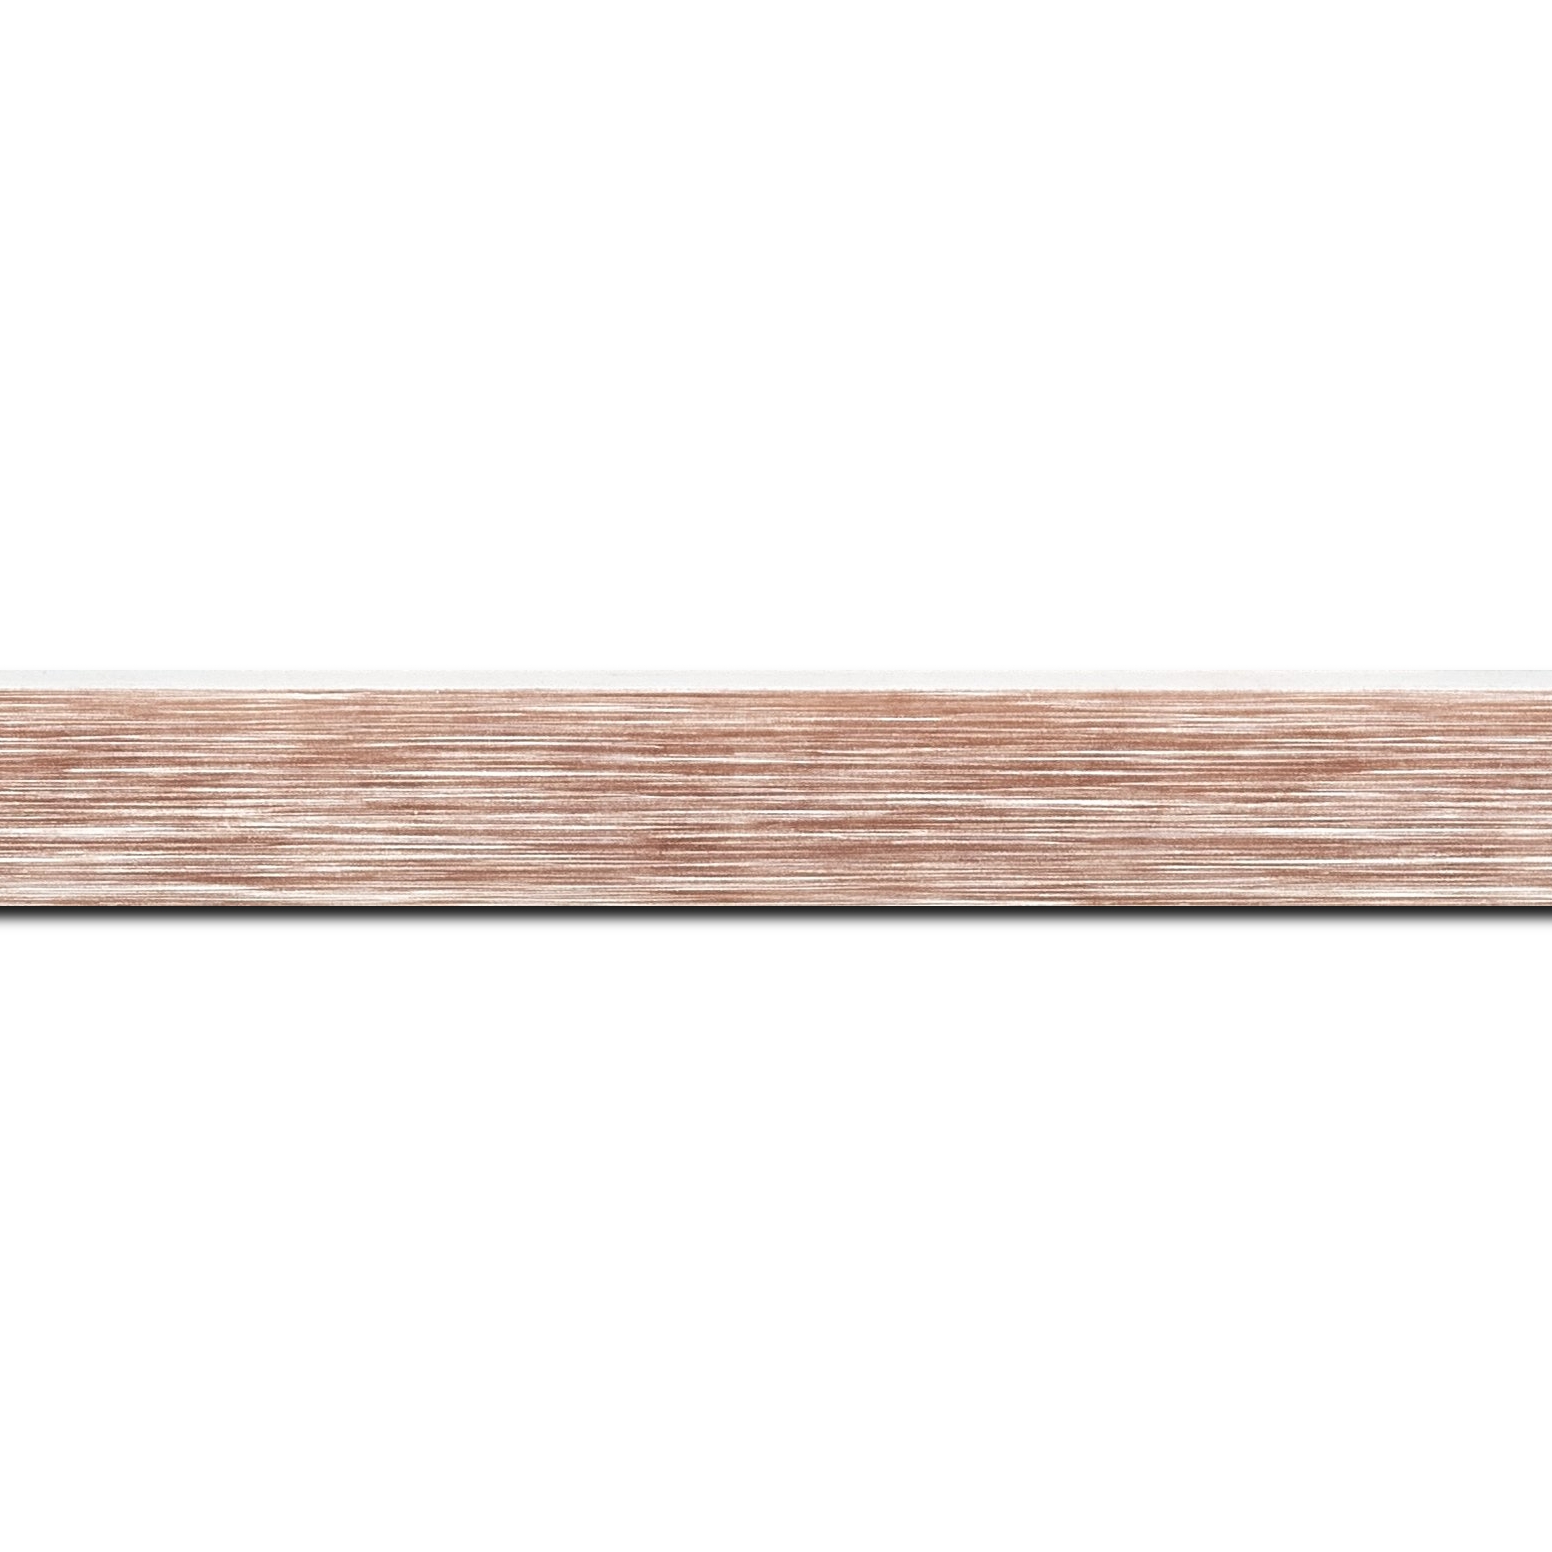 Baguette longueur 1.40m bois profil arrondi en pente plongeant largeur 2.4cm couleur marron tendre, arête et chant extérieur du cadre blanc